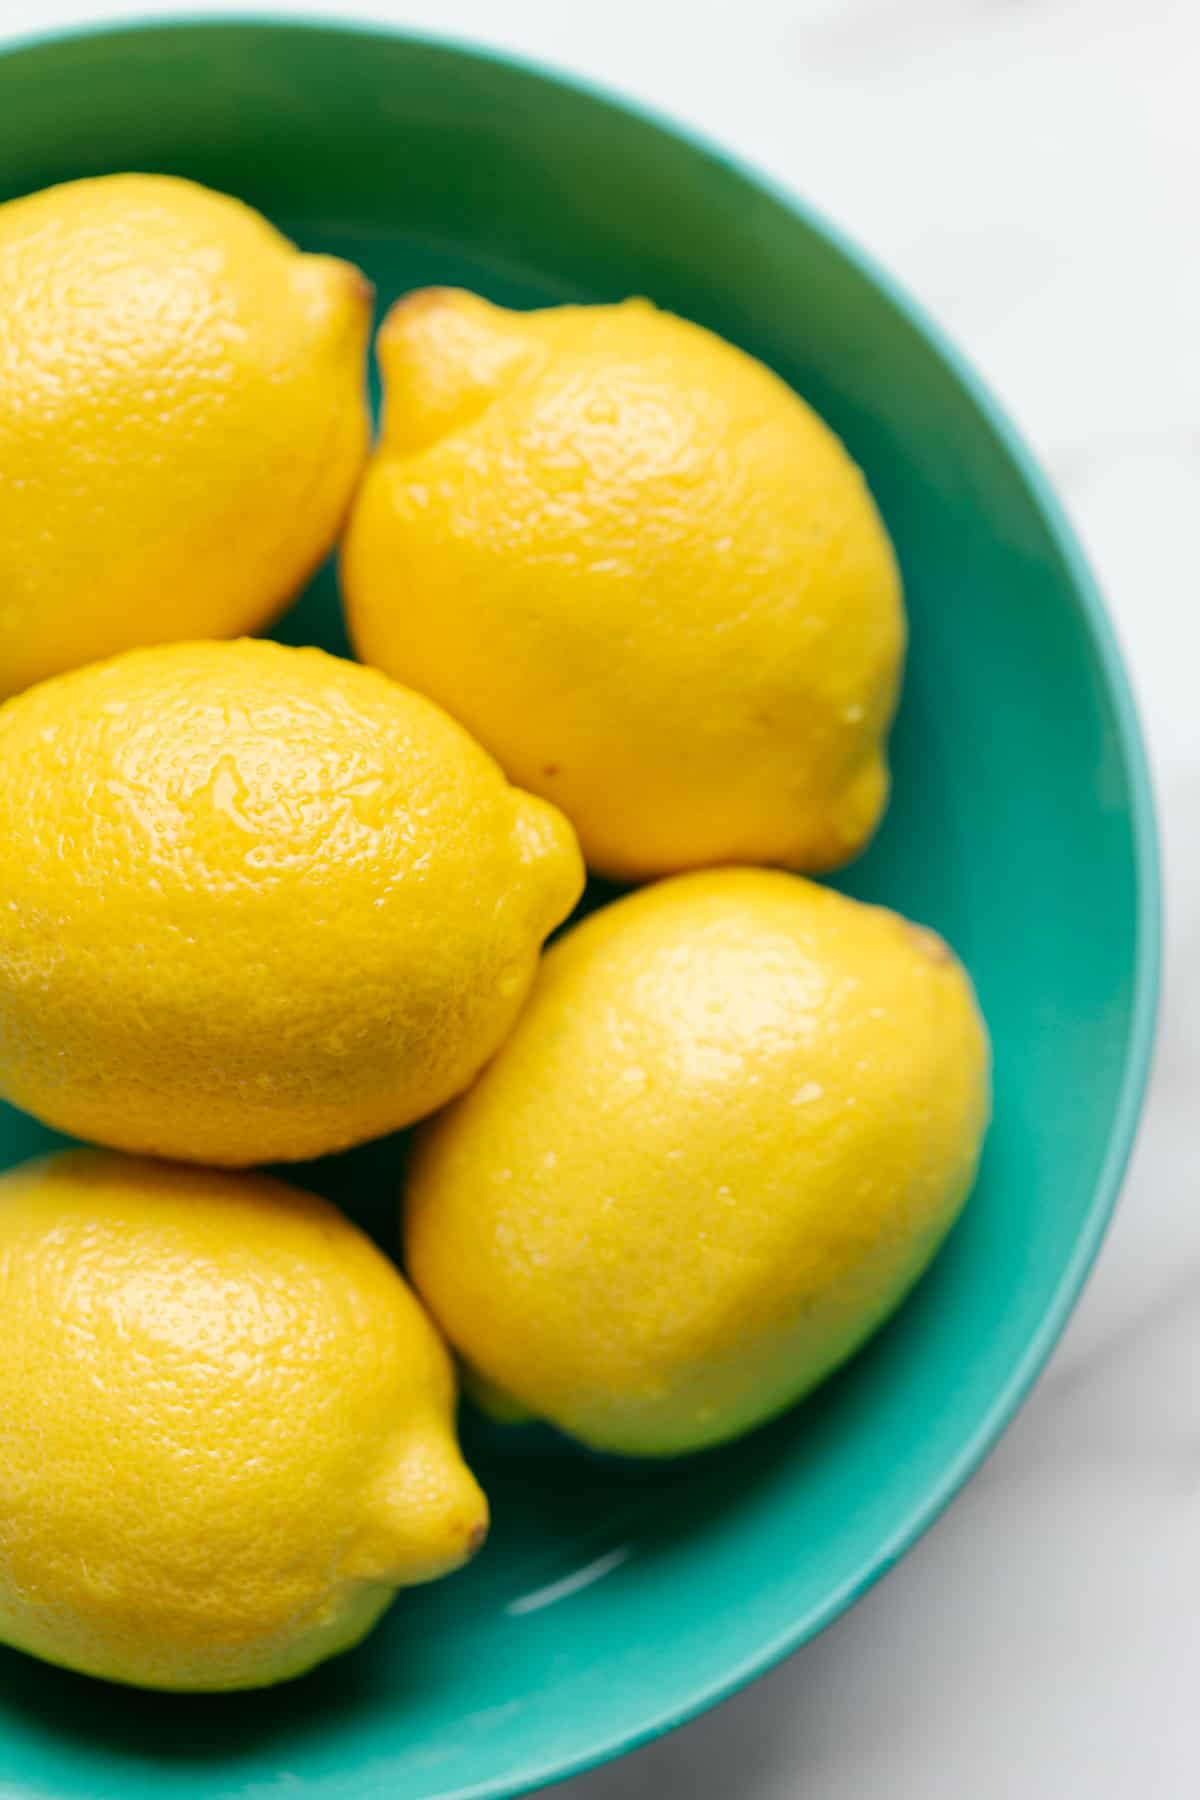 Lemons in a teal bowl.